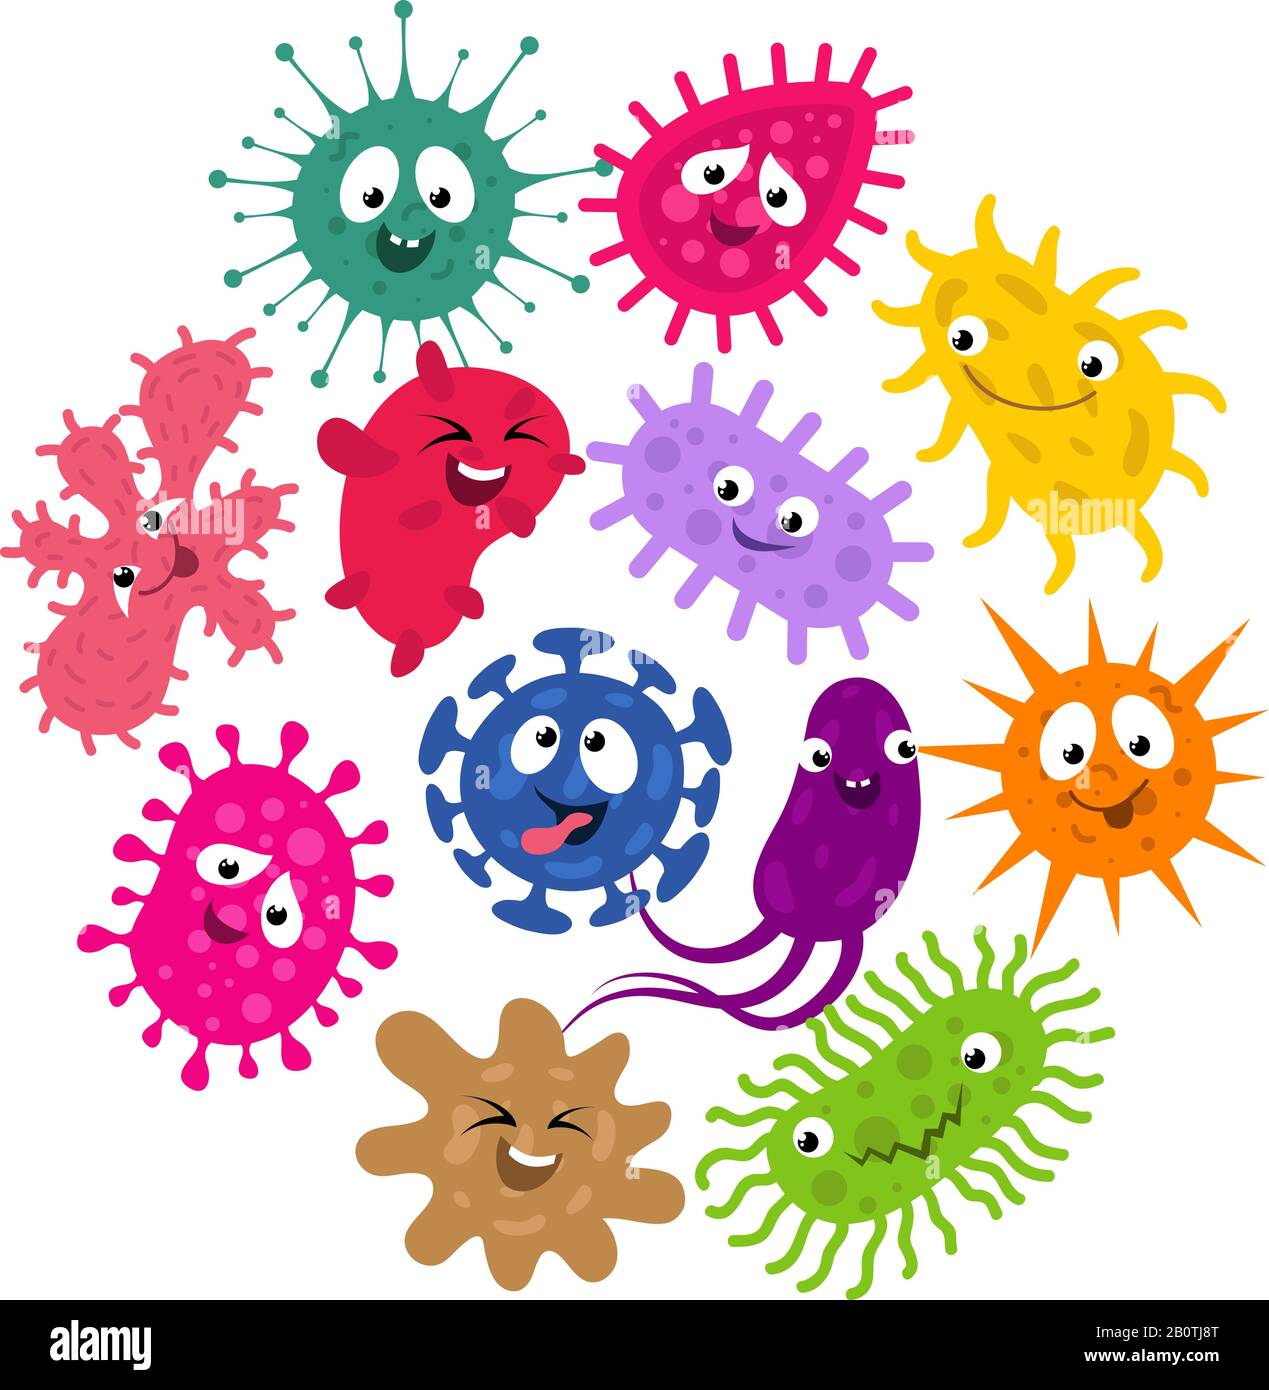 Germi divertenti e virus bambini sfondo vettore. Illustrazione dei caratteri che raggruppano batteri e infezioni da microrganismi microbici Illustrazione Vettoriale